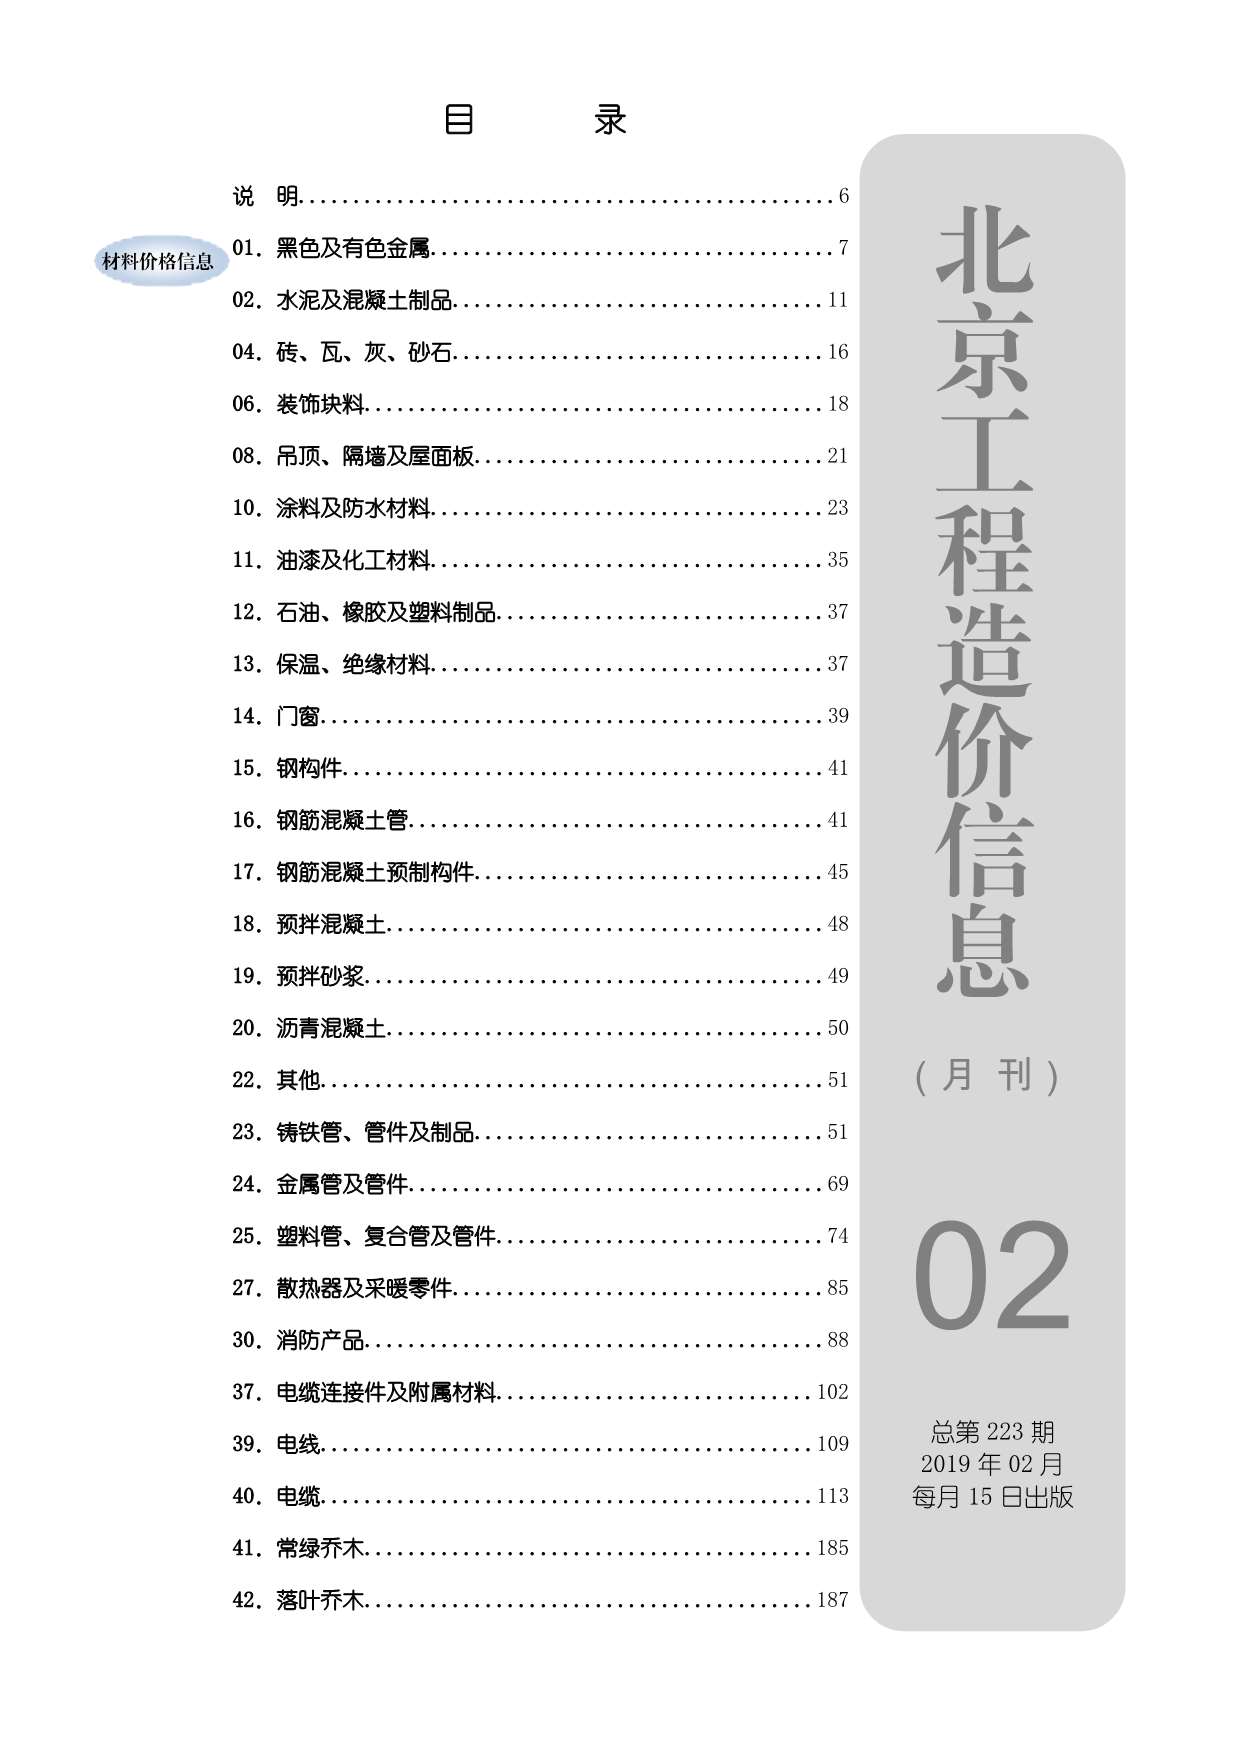 北京市2019年2月工程信息价_北京市信息价期刊PDF扫描件电子版